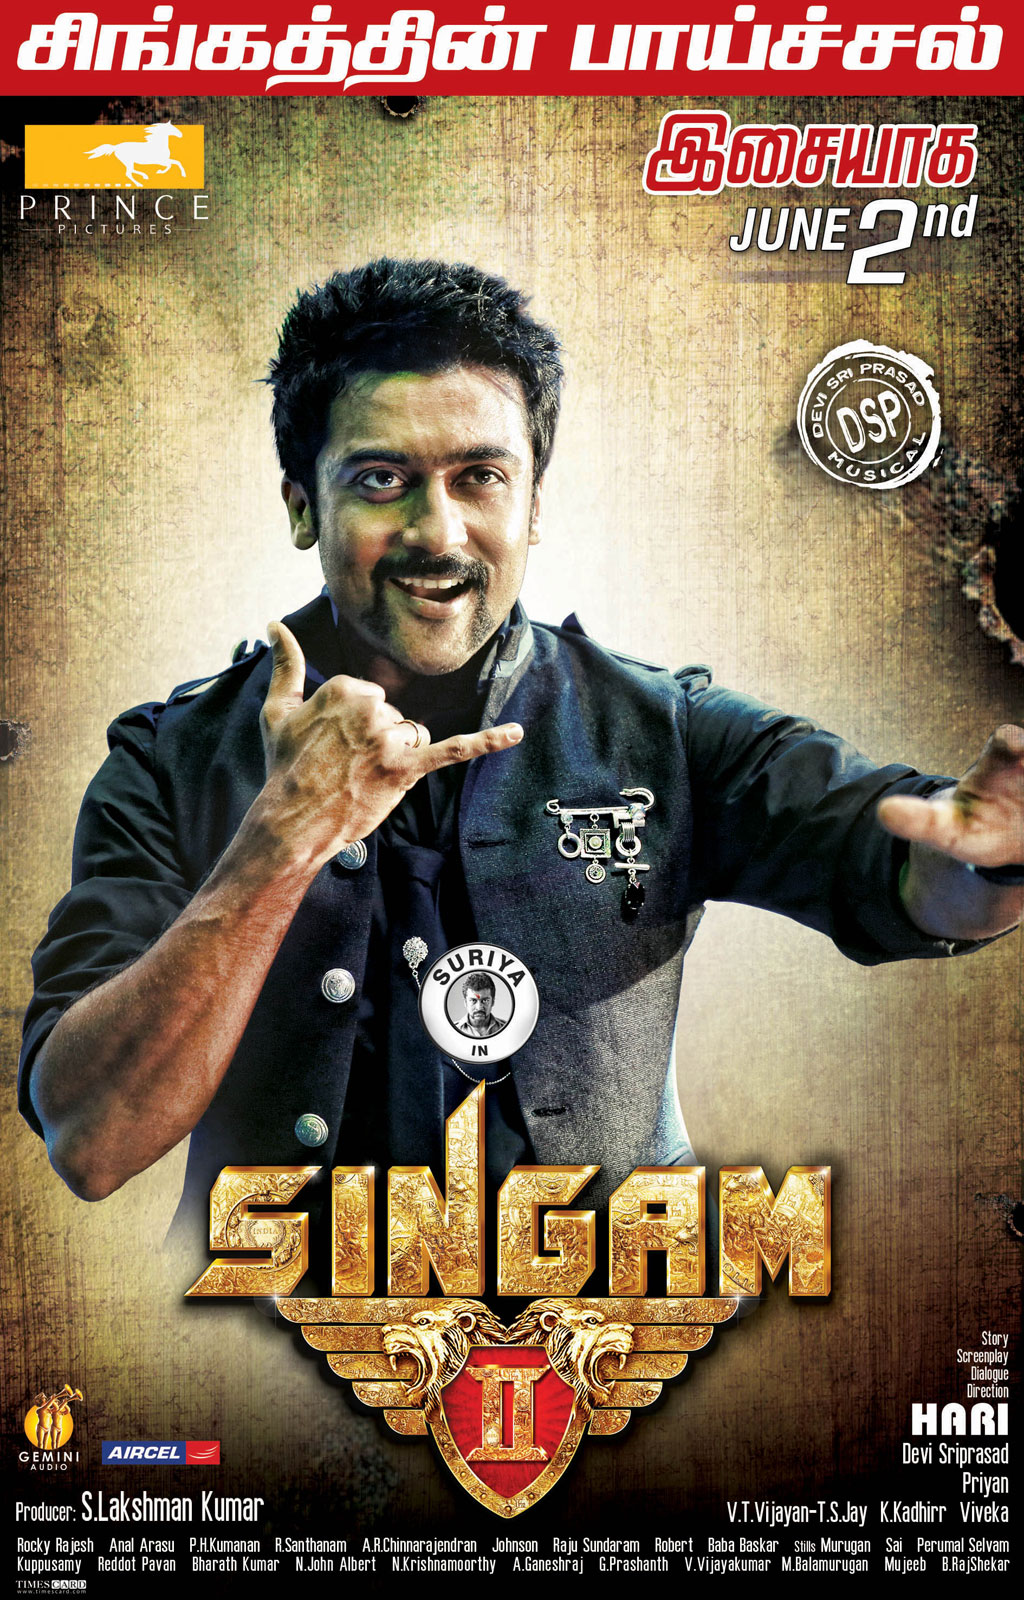 ... cinema | Movies | Telugu cinema reviews: Singam 2 Movie Wallpapers